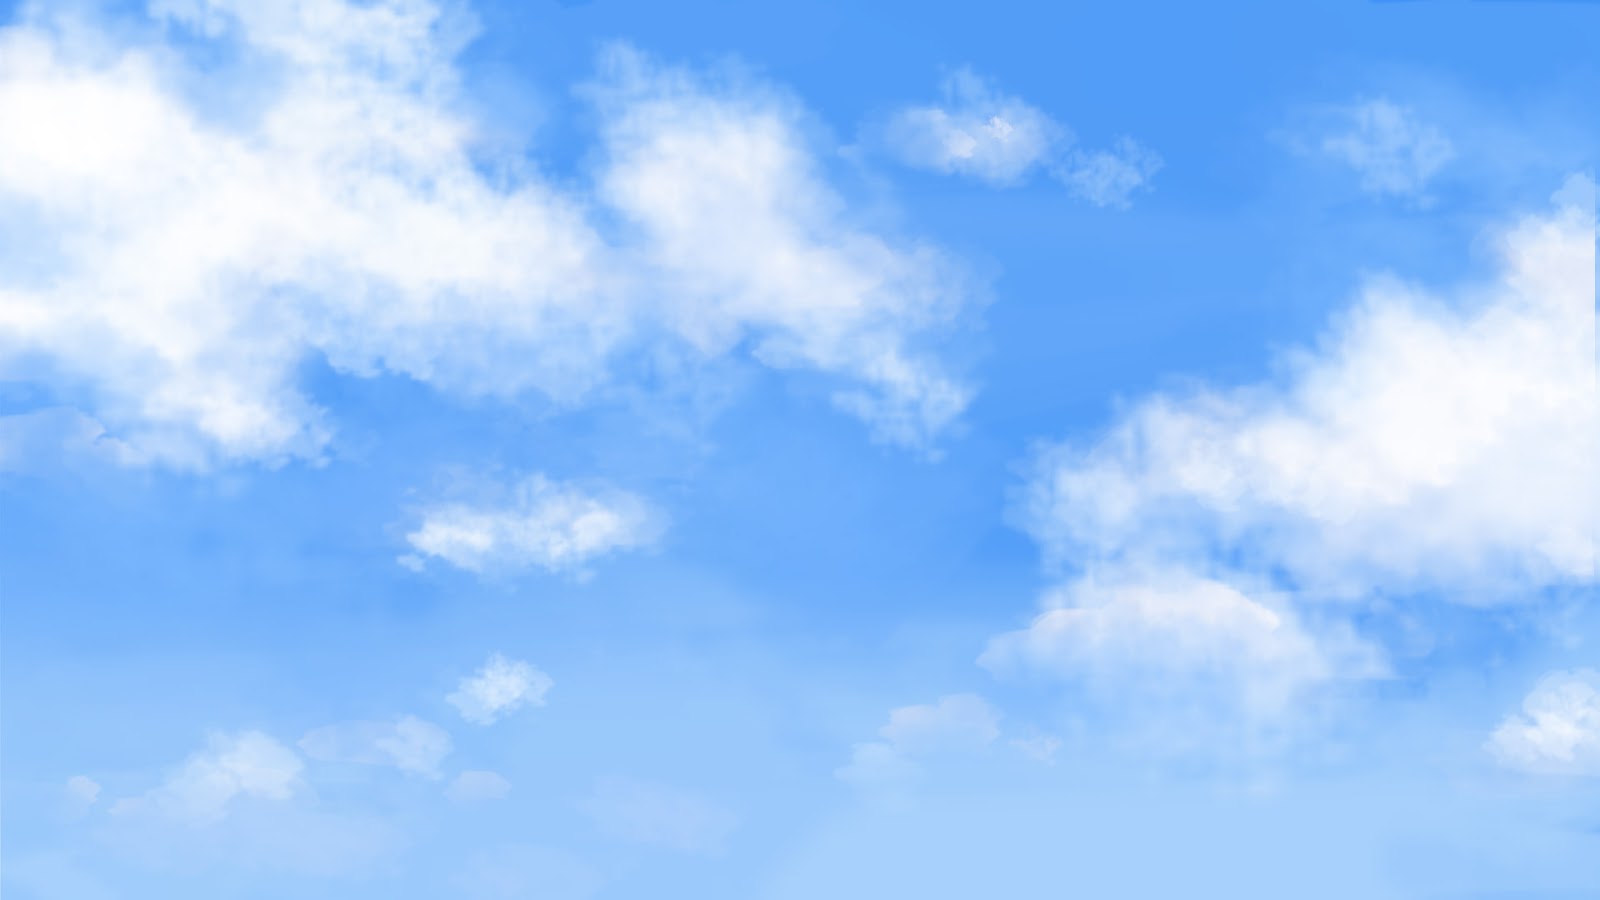 Bạn muốn sử dụng nền đám mây di chuyển để trang trí cho máy tính của mình? Đừng bỏ lỡ cơ hội tải về miễn phí những hình ảnh đám mây đẹp nhất, mang đến cho bạn cảm nhận về sự tuyệt vời của thiên nhiên.